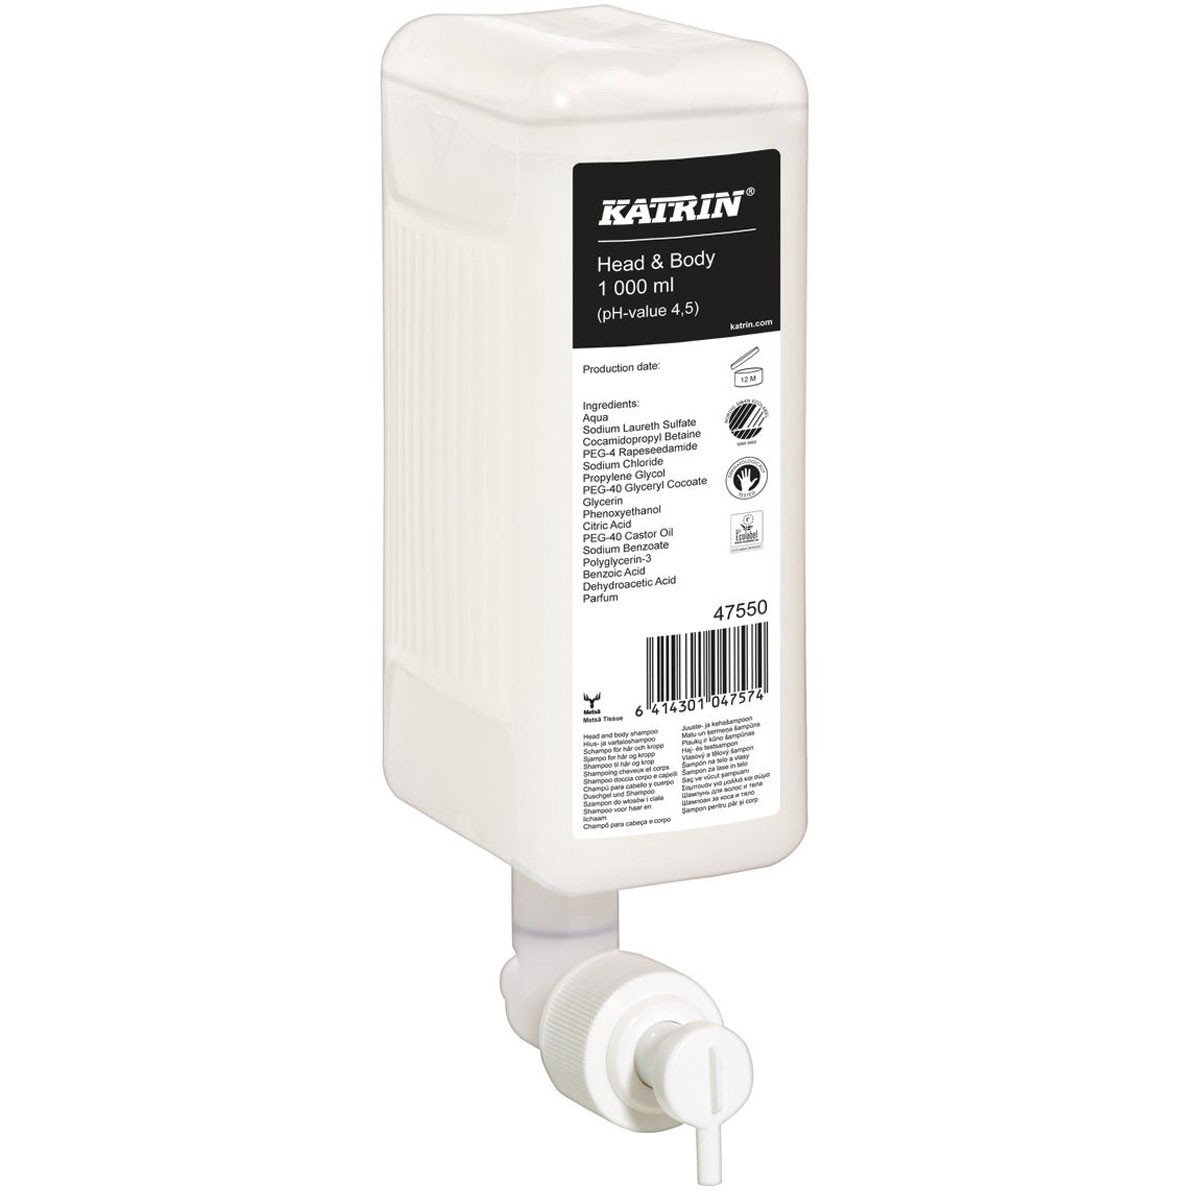 Katrin Head & Body shampoo 1000 ml